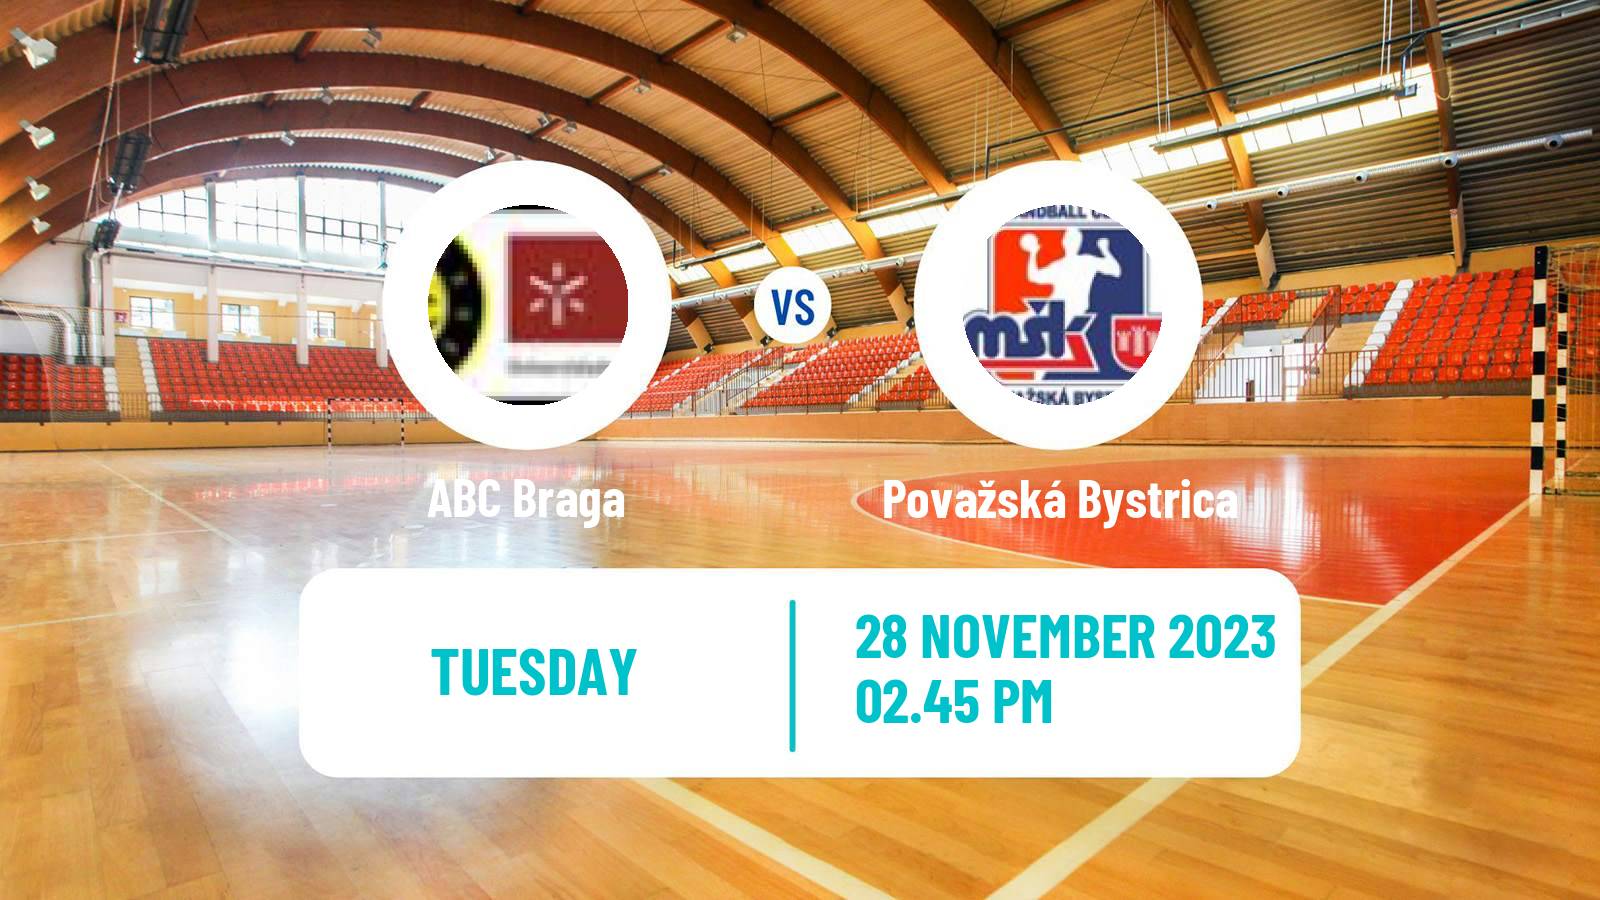 Handball EHF European League ABC Braga - Považská Bystrica